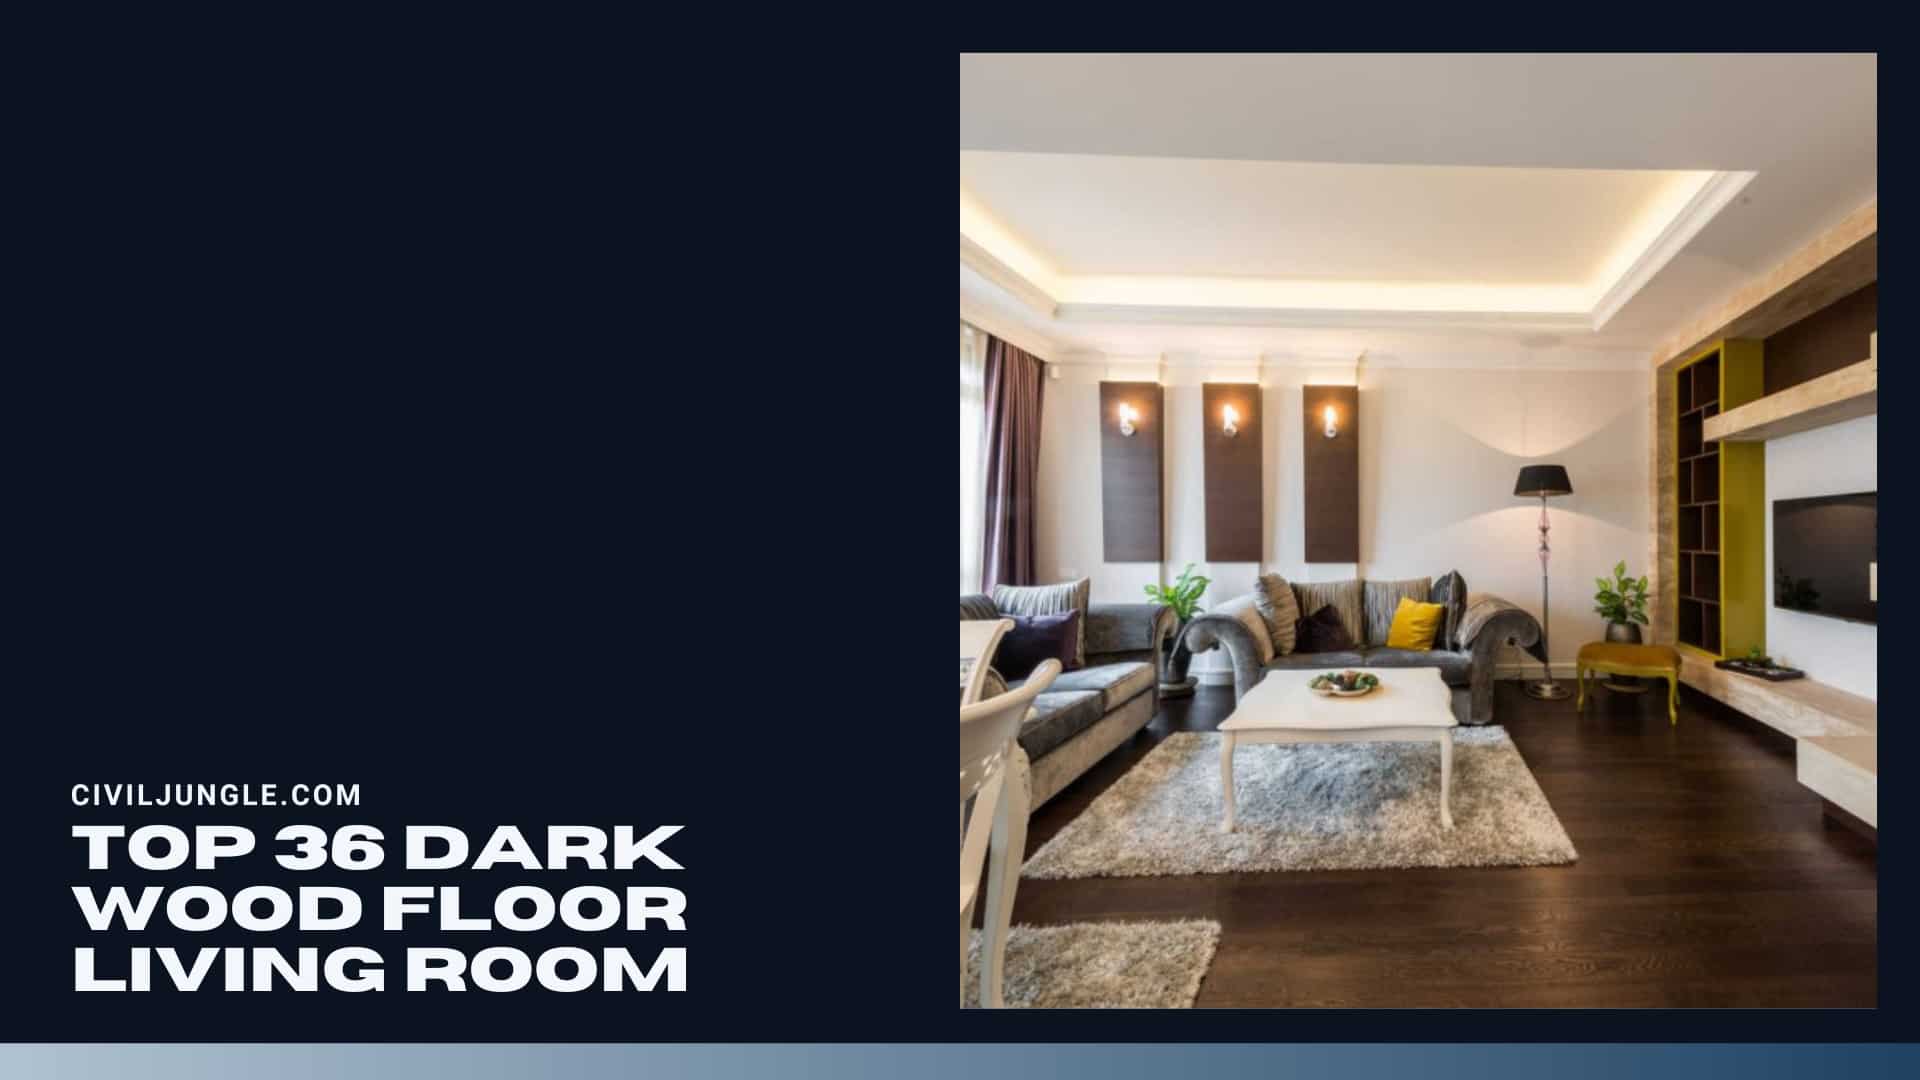 Top 36 Dark Wood Floor Living Room